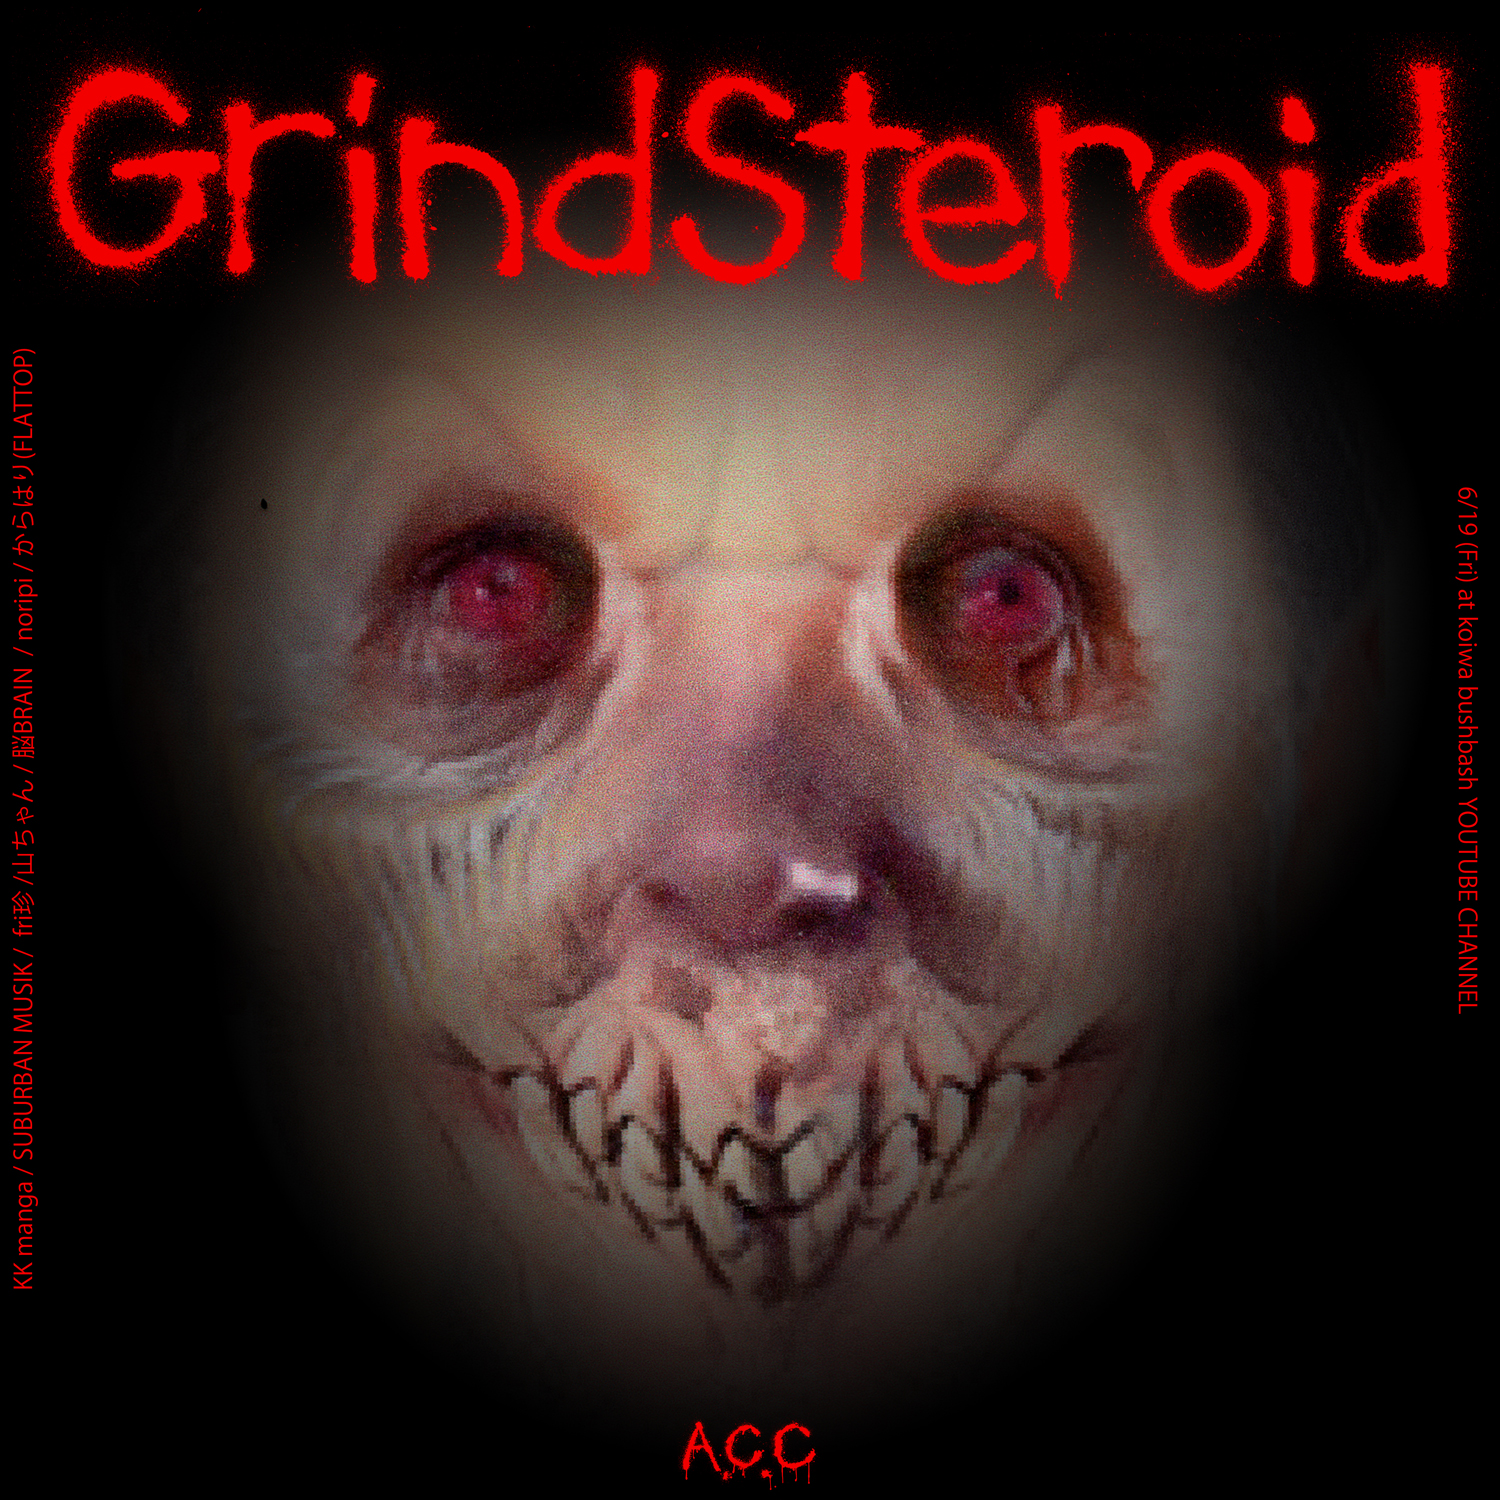 Grind steroid